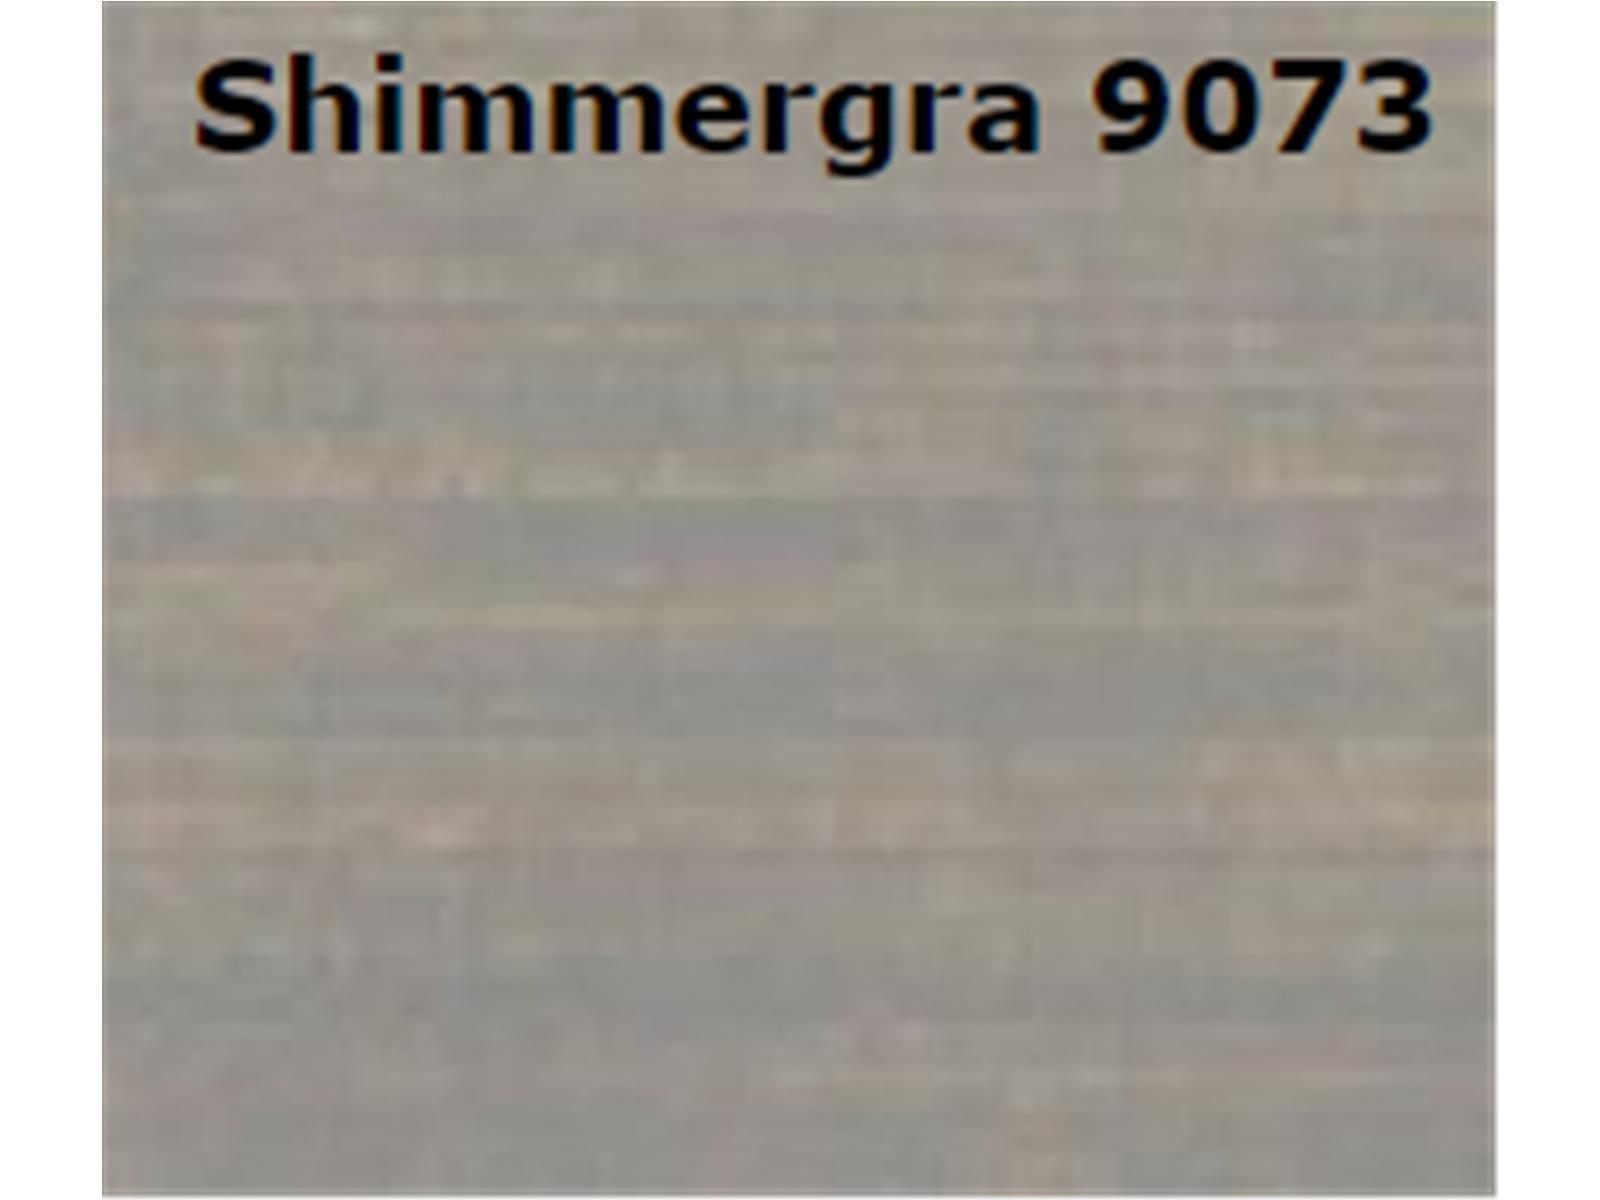 Jotun DEMIDEKK Terrasslasyr Holzschutz 10 L SHIMMERGRA 9073